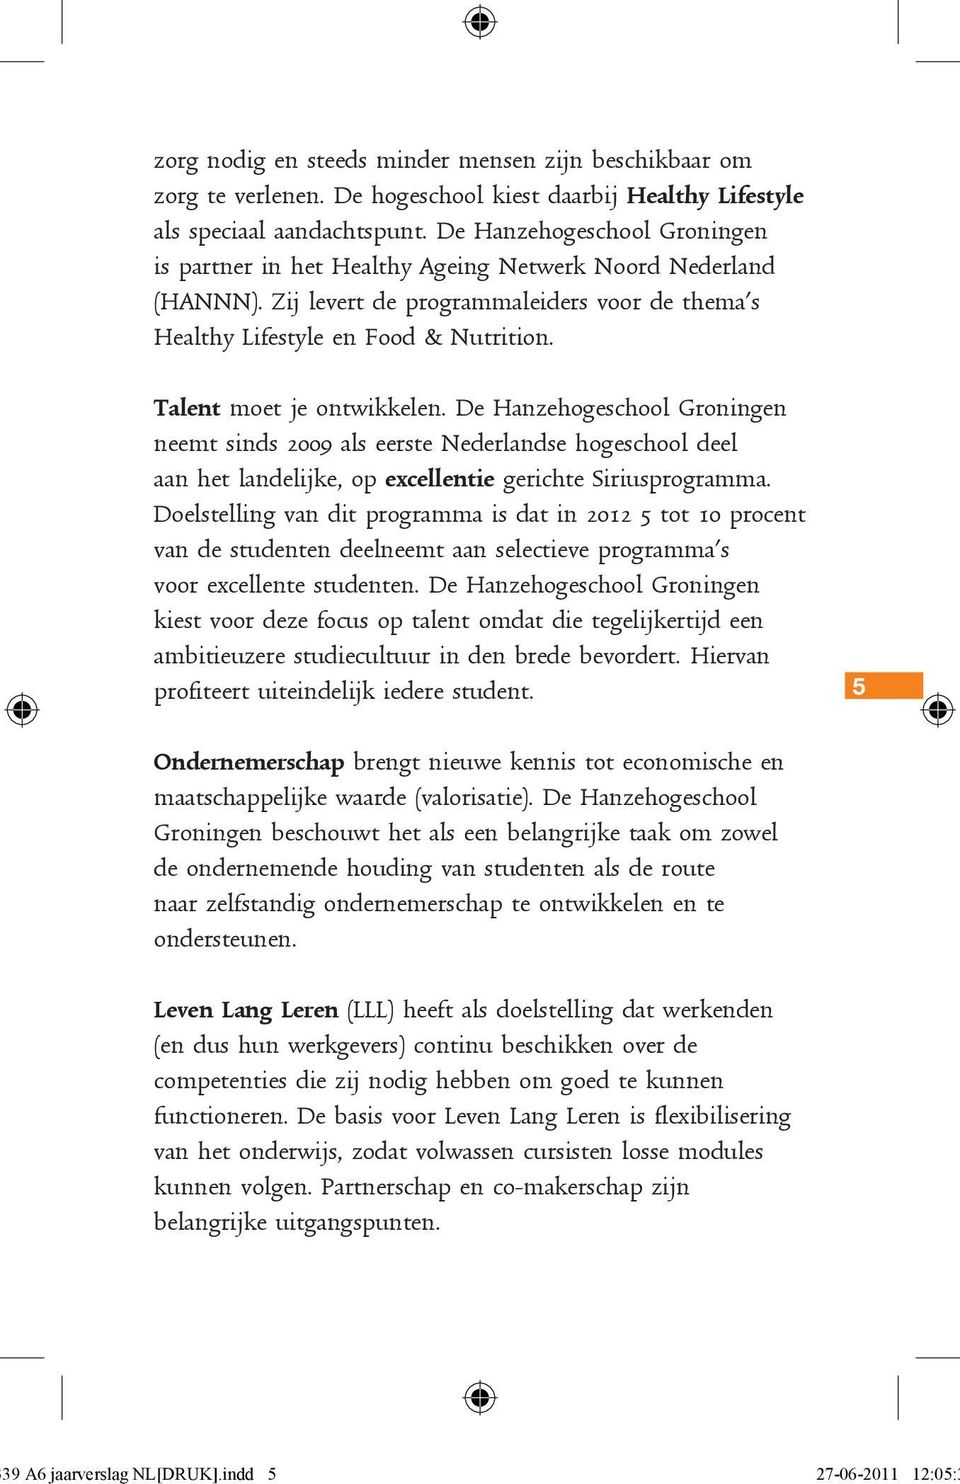 Talent moet je ontwikkelen. De Hanzehogeschool Groningen neemt sinds 2009 als eerste Nederlandse hogeschool deel aan het landelijke, op excellentie gerichte Siriusprogramma.